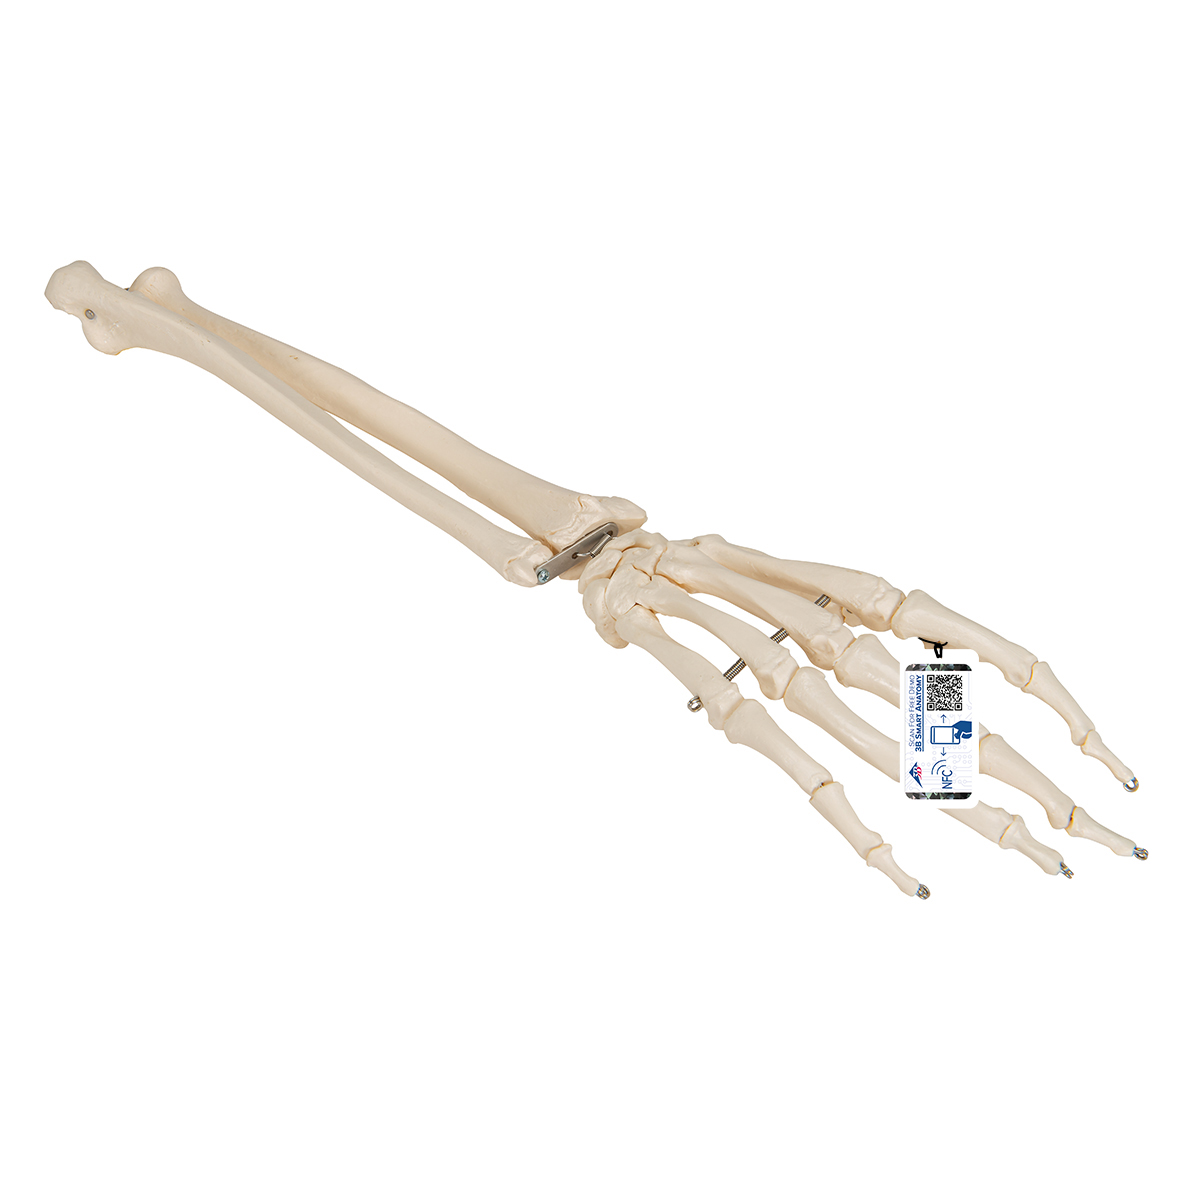 Handskelett Modell mit Unterarm, auf Draht gezogen - 3B Smart Anatomy, Bestellnummer 1019370, A41, 3B Scientific